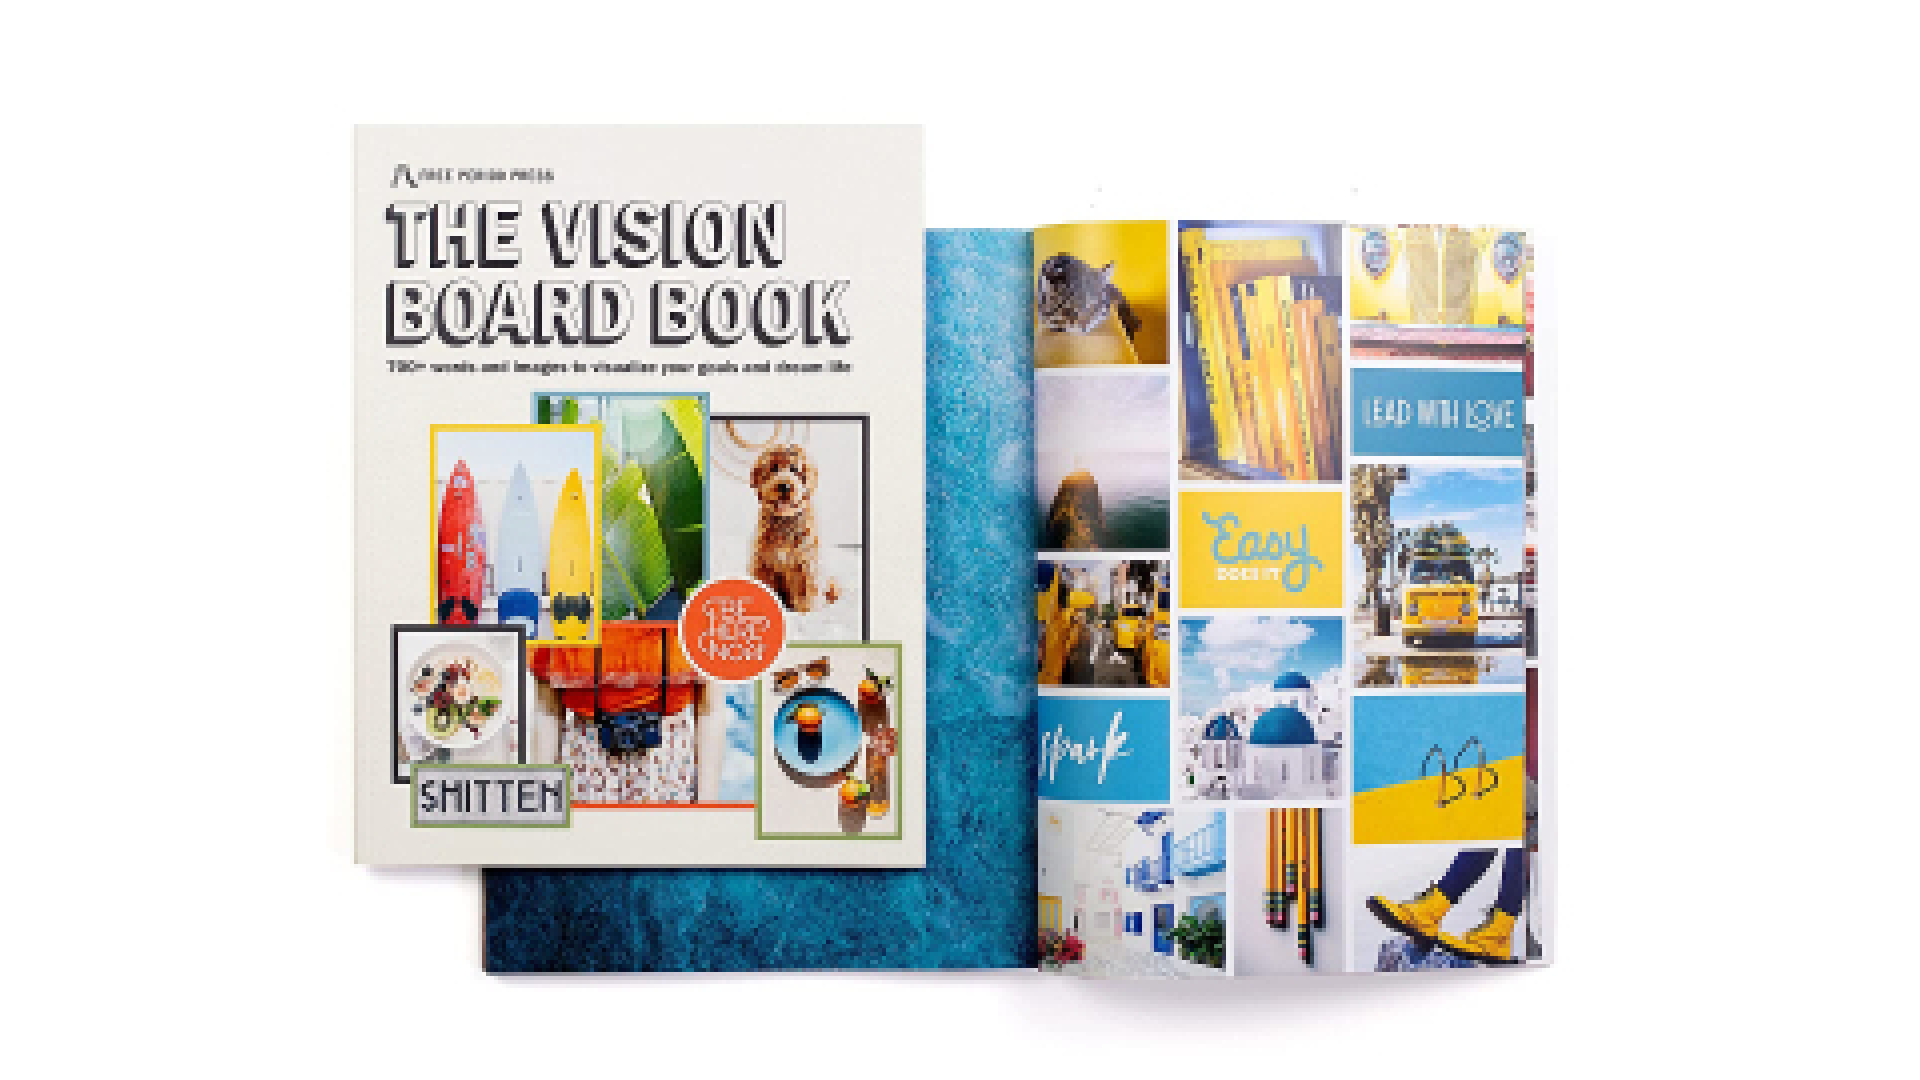 Vision board book